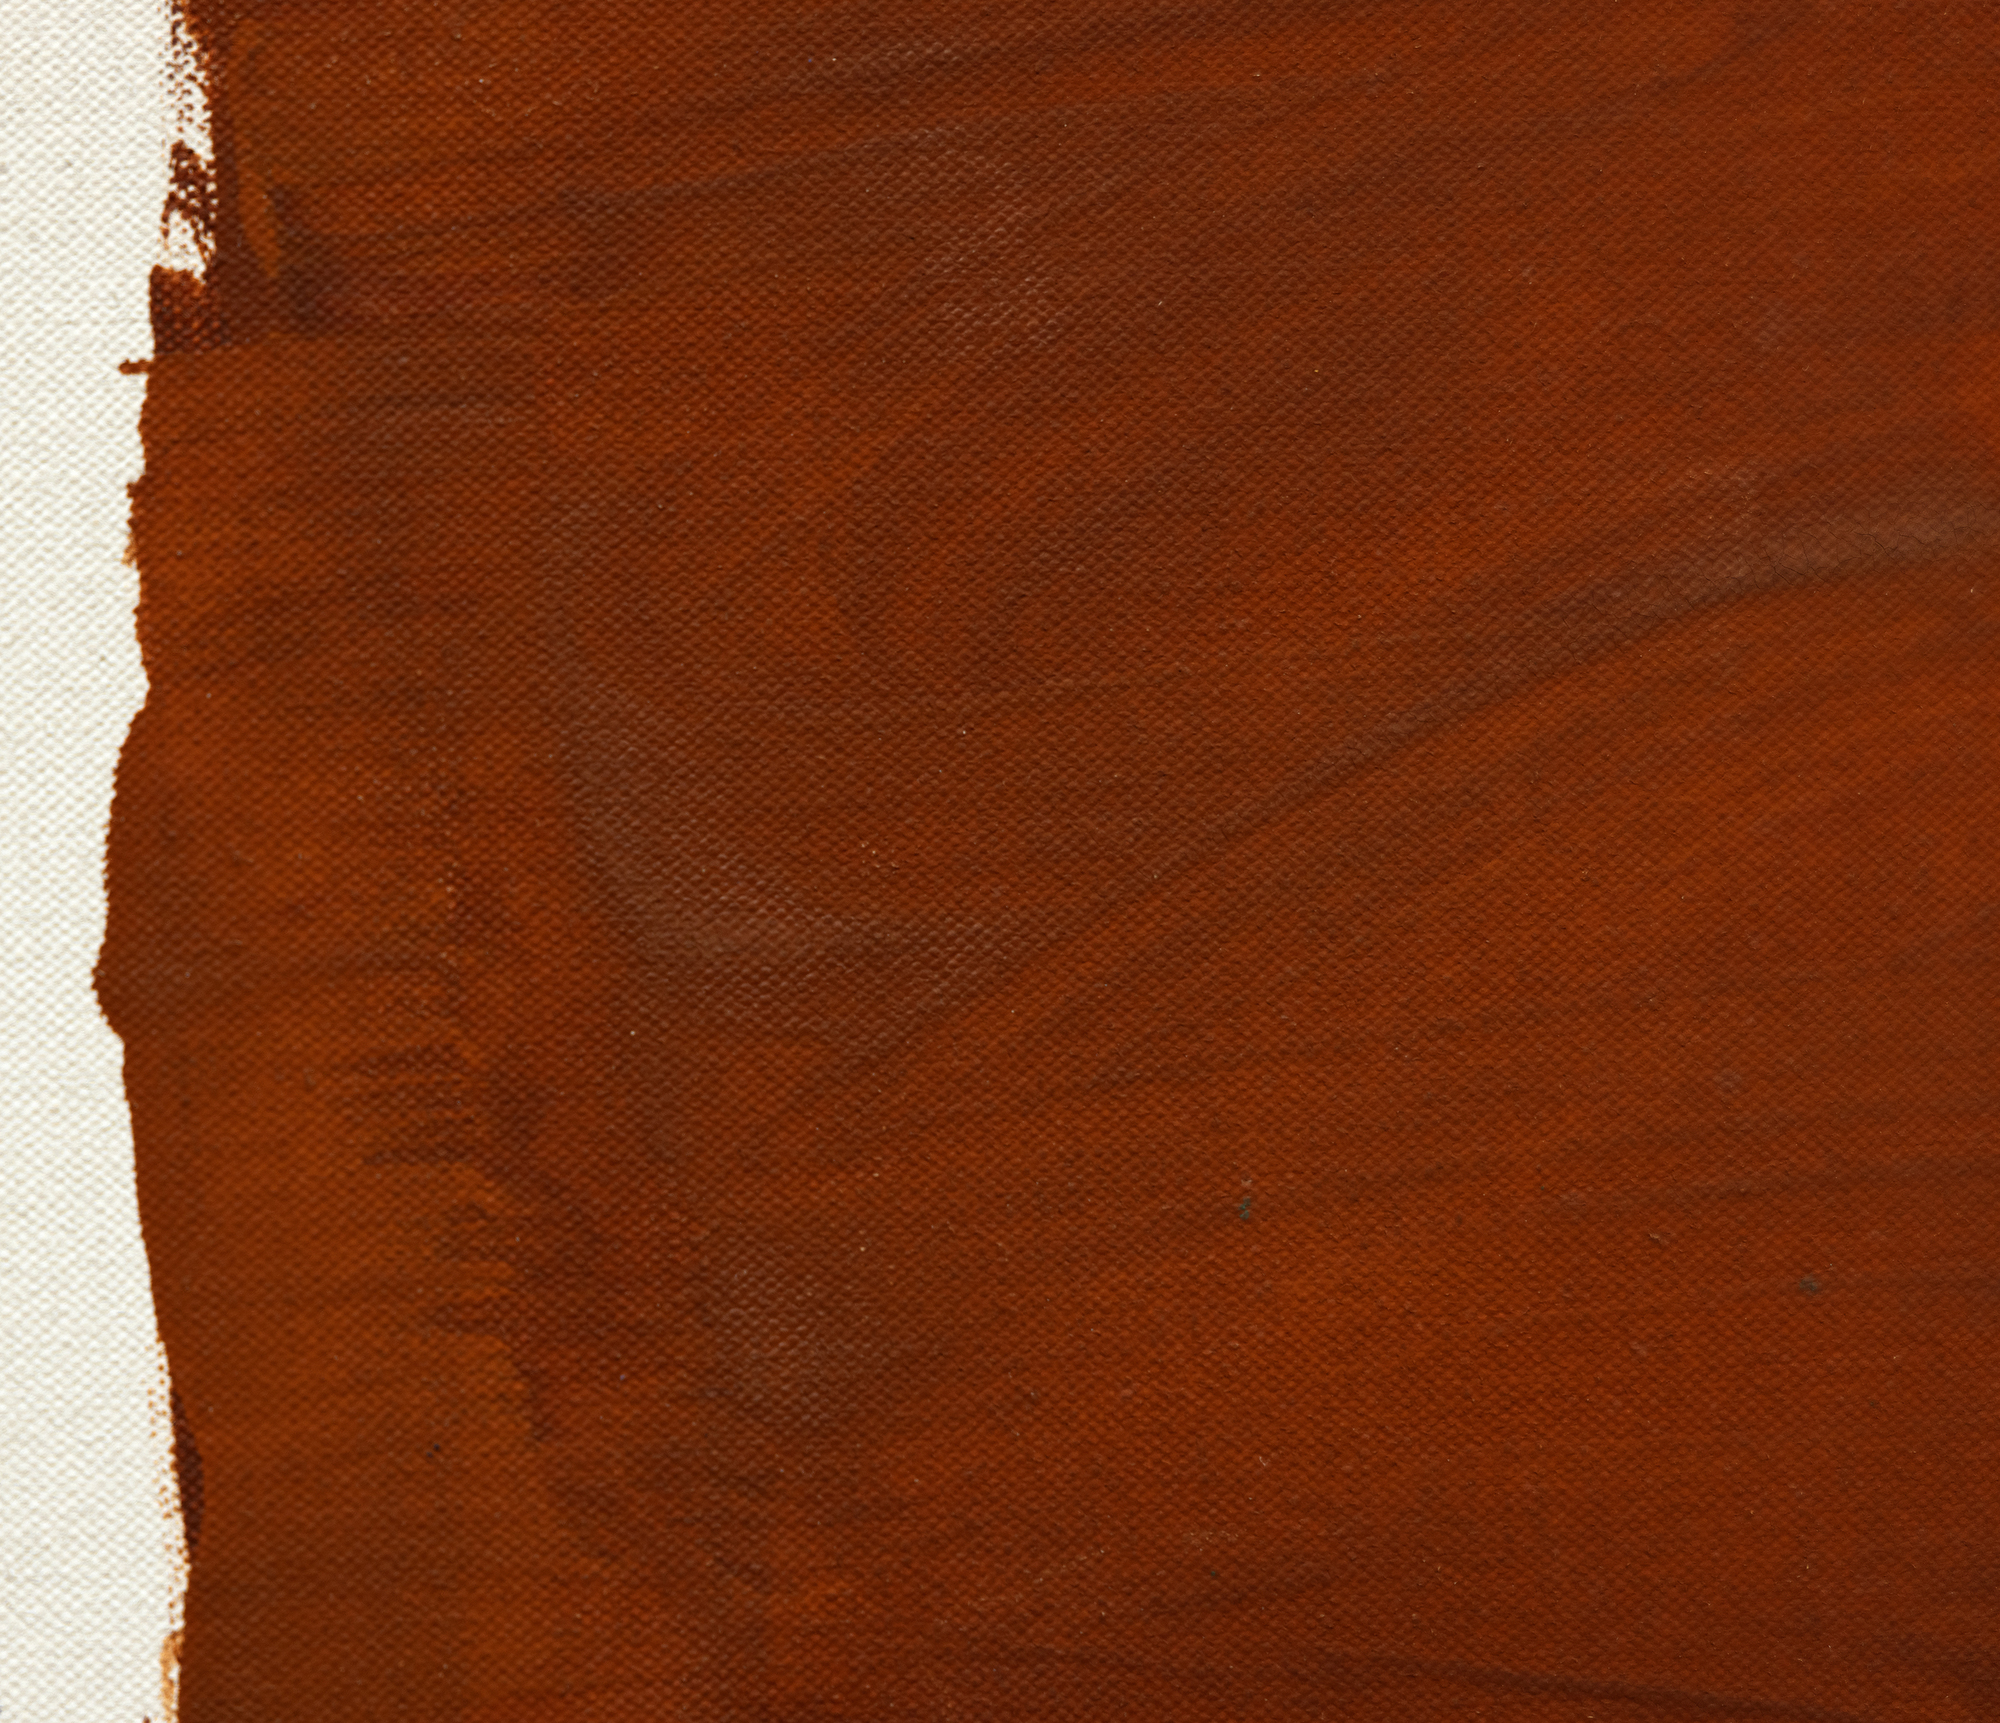 Desde finales de la década de 1950 hasta mediados de la de 1960, las primeras contribuciones de Ray Parker a la pintura Color Field destacan por su calidad vibrante y fresca. Parker disponía dos o más bloques de color robustos y de bordes rugosos utilizando una técnica vigorosa y con pinceladas sobre grandes lienzos preparados con gesso. Estos bloques, realizados con colores saturados pero sutilmente vibrantes, muestran una energía inconfundible. Aunque las composiciones de Parker pueden recordar a las de Rothko, la forma en que se aplica el color -sólida y enérgica- las diferencia. Manteniendo la gran escala y el dinamismo de la Escuela de Nueva York, la obra de Parker diverge al renunciar a la intensidad emocional asociada a menudo con el Expresionismo Abstracto y adopta una visión del movimiento desprovista de su típico patetismo.